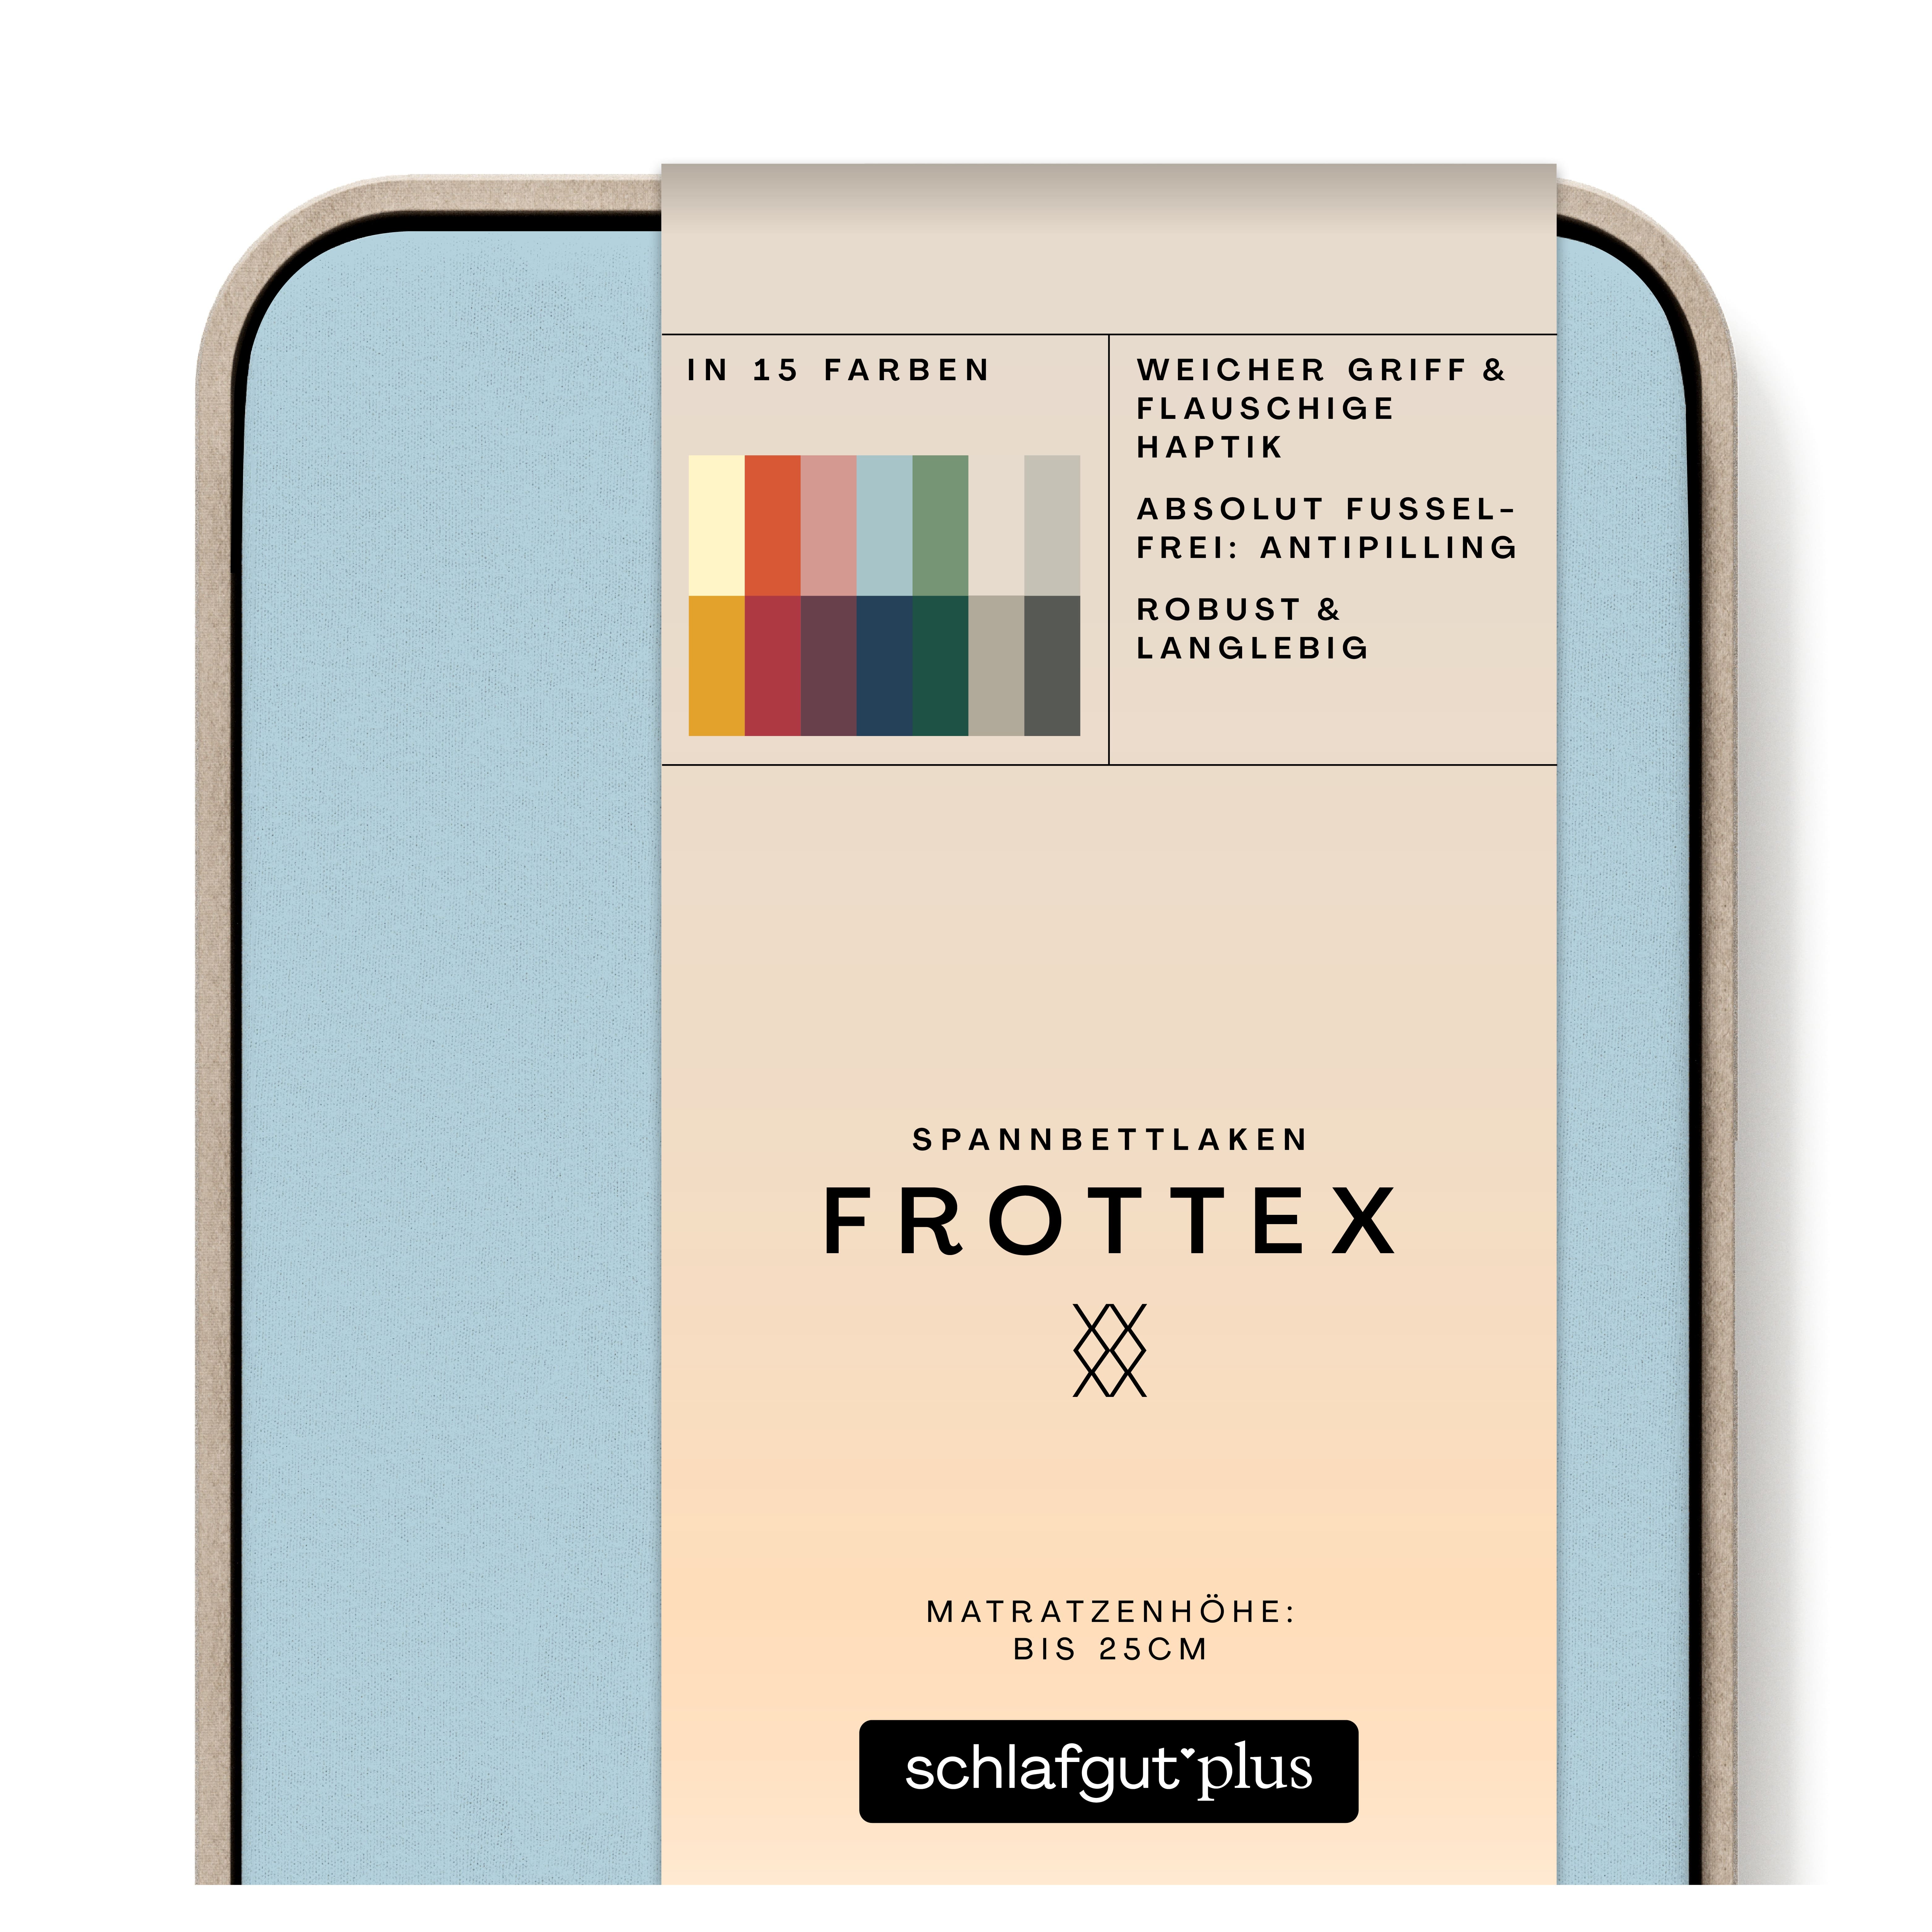 Das Produktbild vom Spannbettlaken der Reihe Frottex in Farbe blue light von Schlafgut